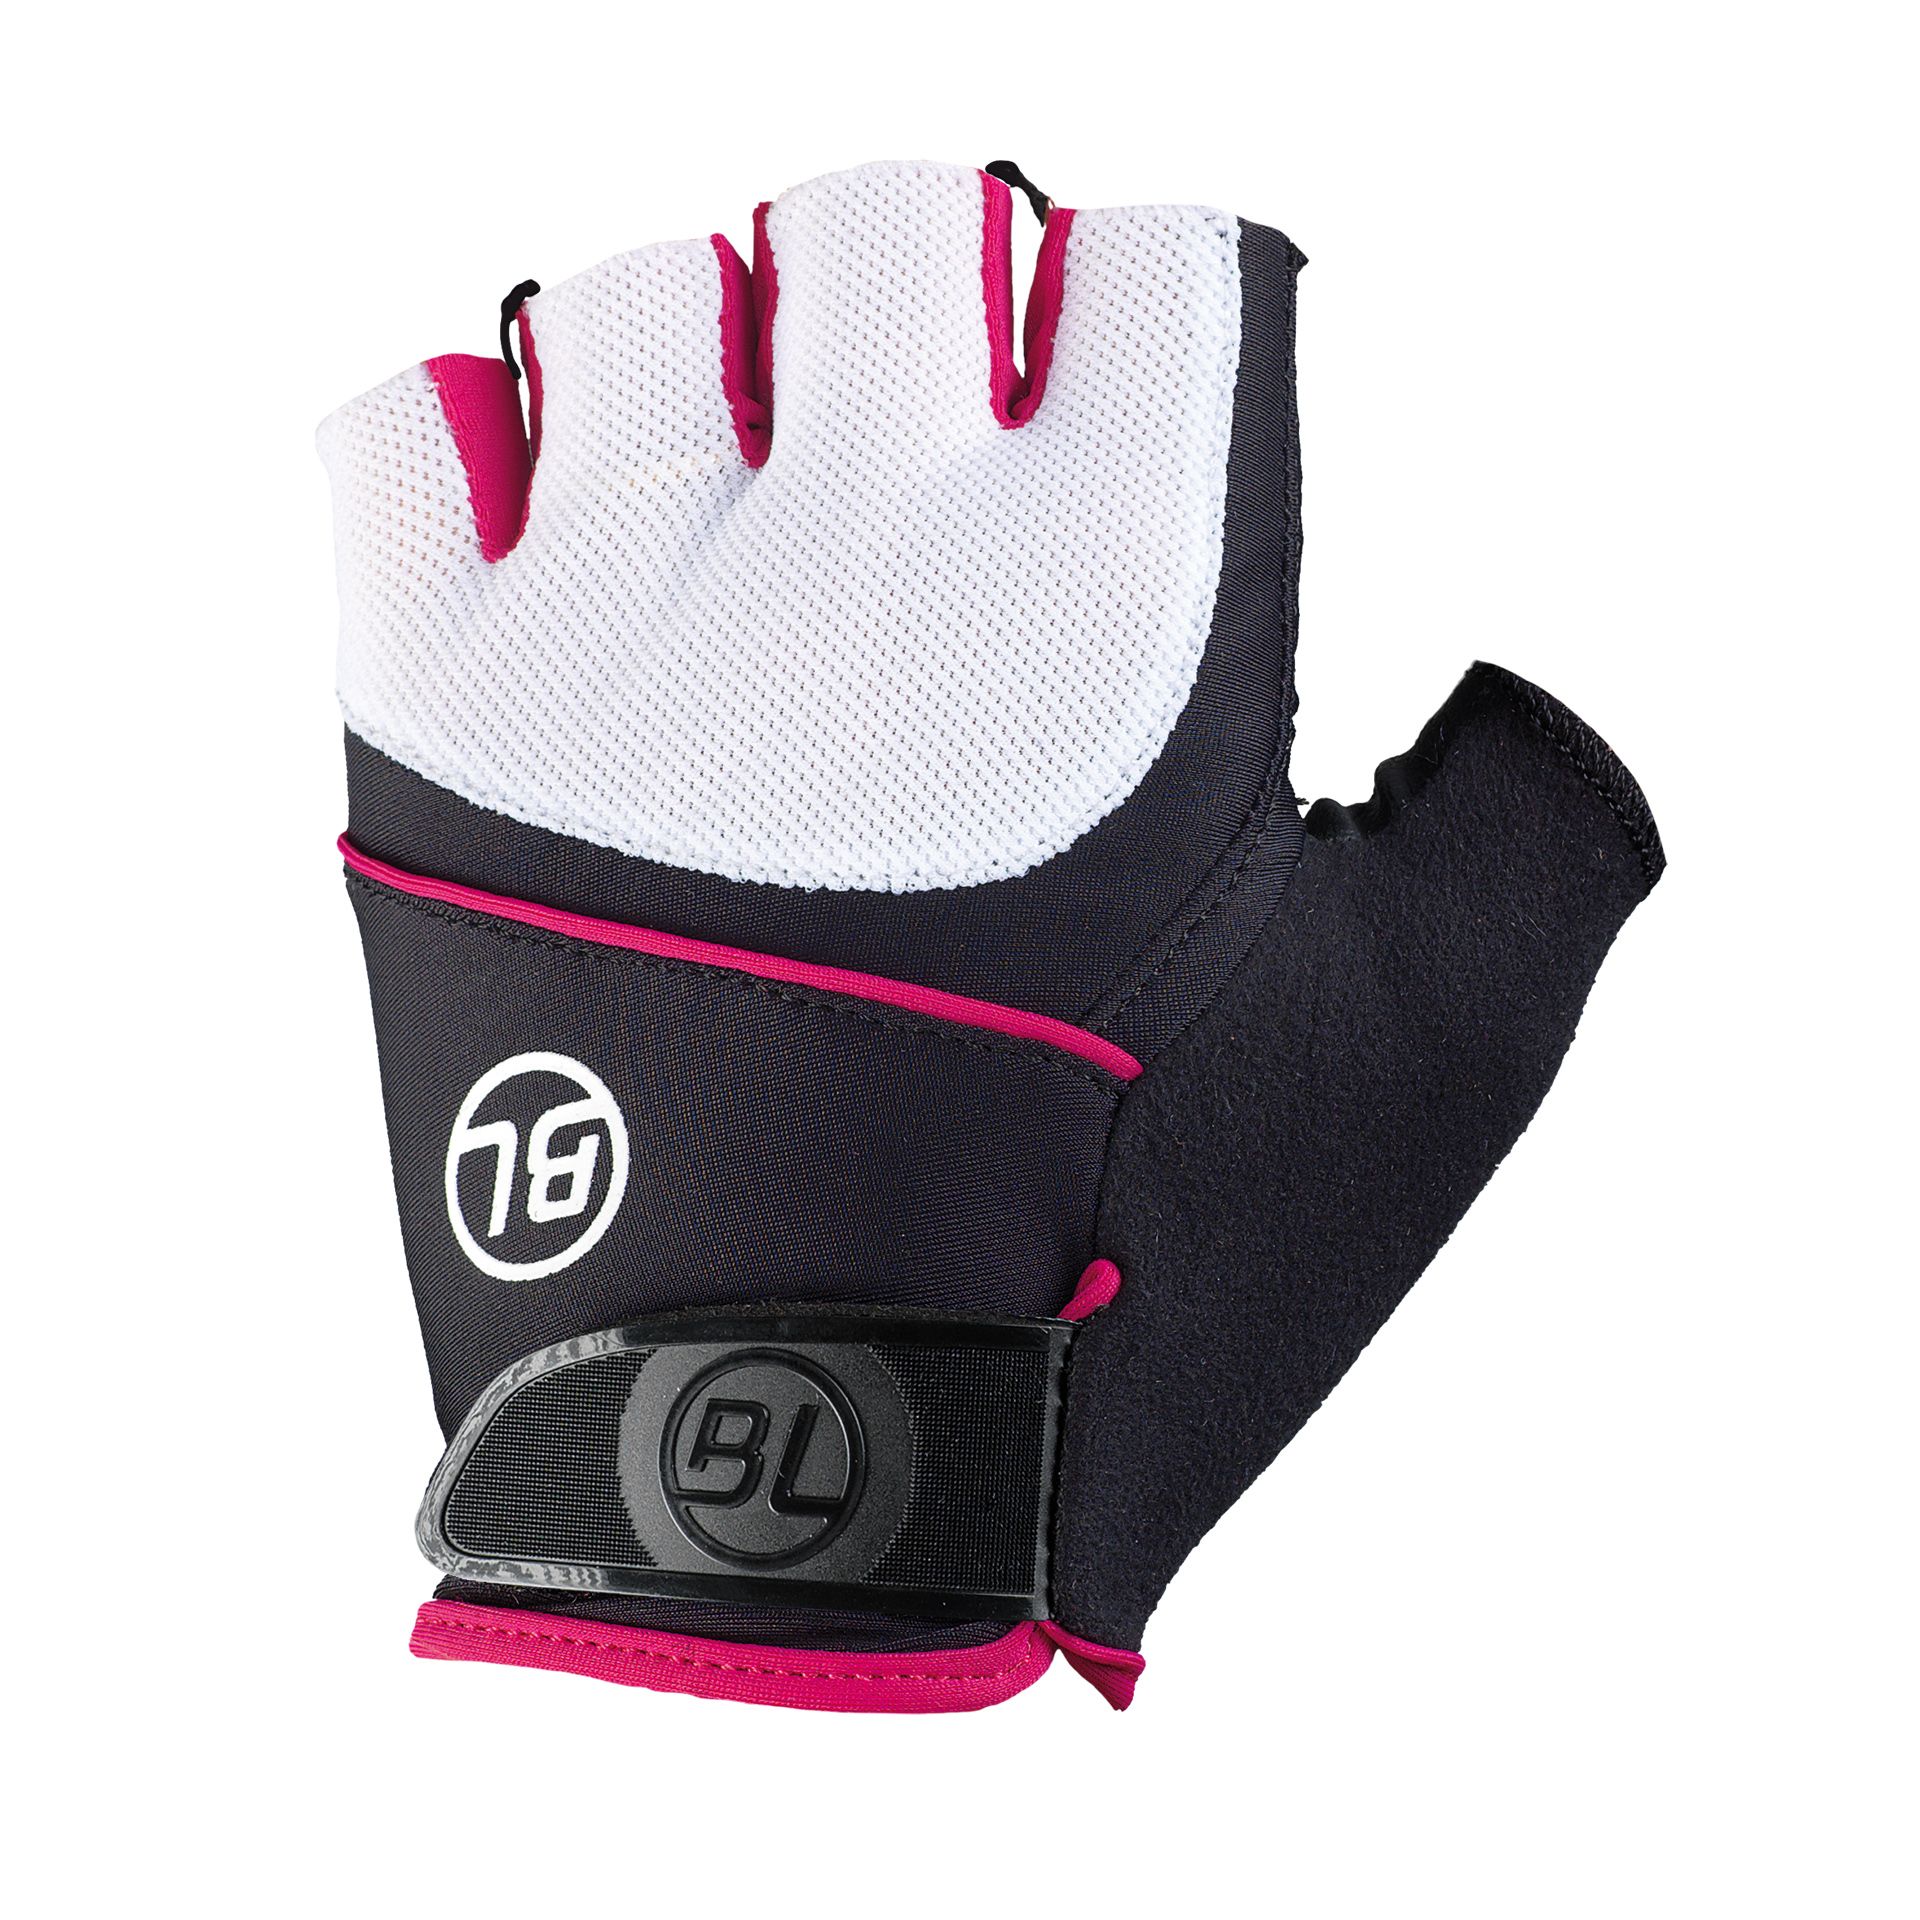 Перчатки Bicycle Line GUIDA, женские, без пальцев, черно-бело-розовые, размер S фото 